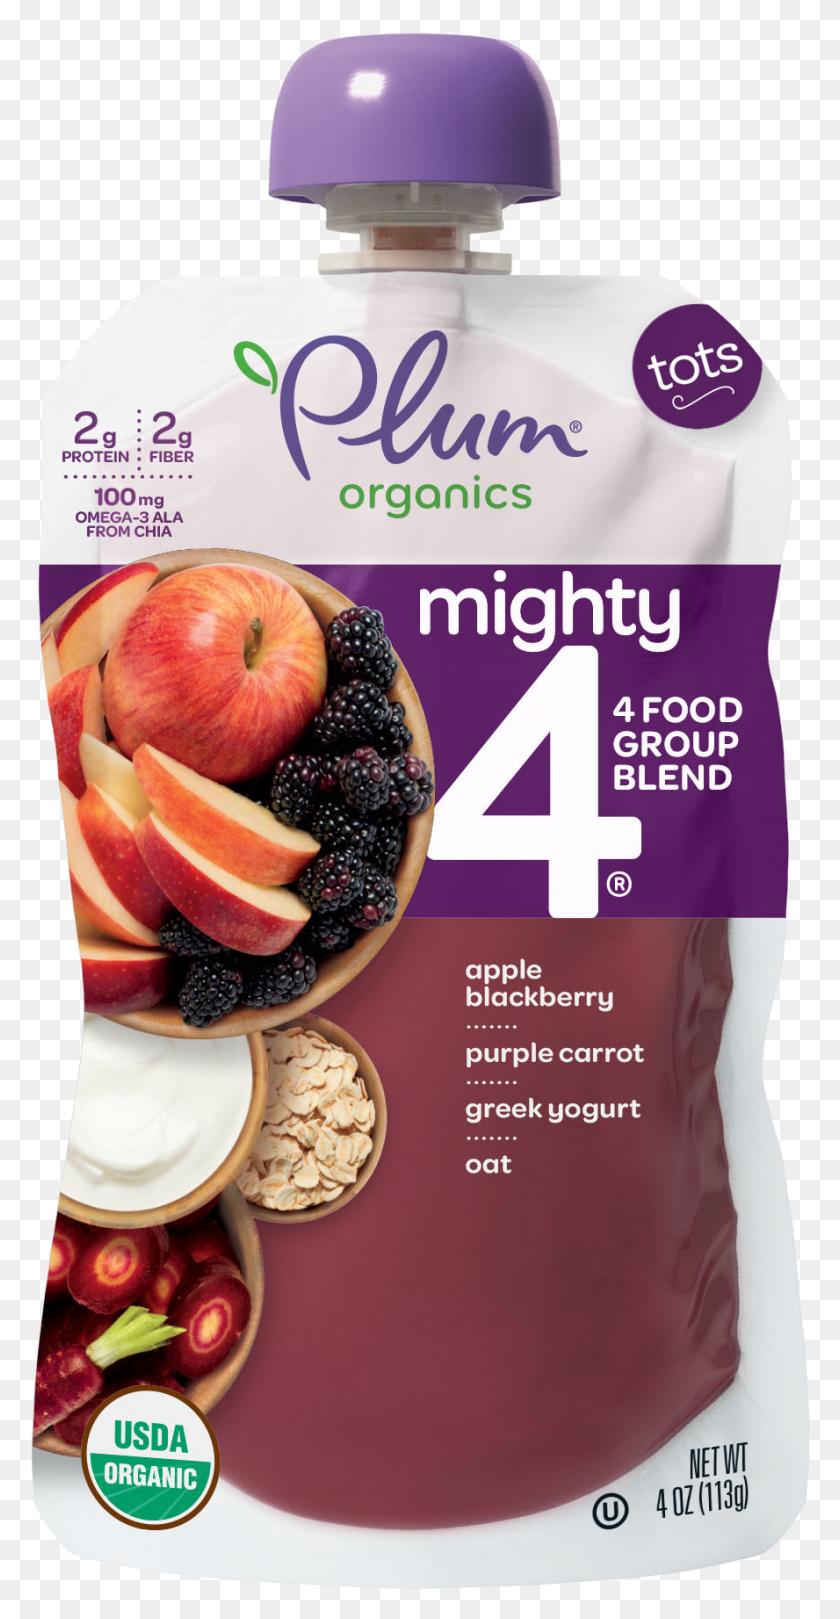 888x1775 Apple Blackberry Purple Carrot Greek Yogurt Oat, Plant, Food, Fruit HD PNG Download